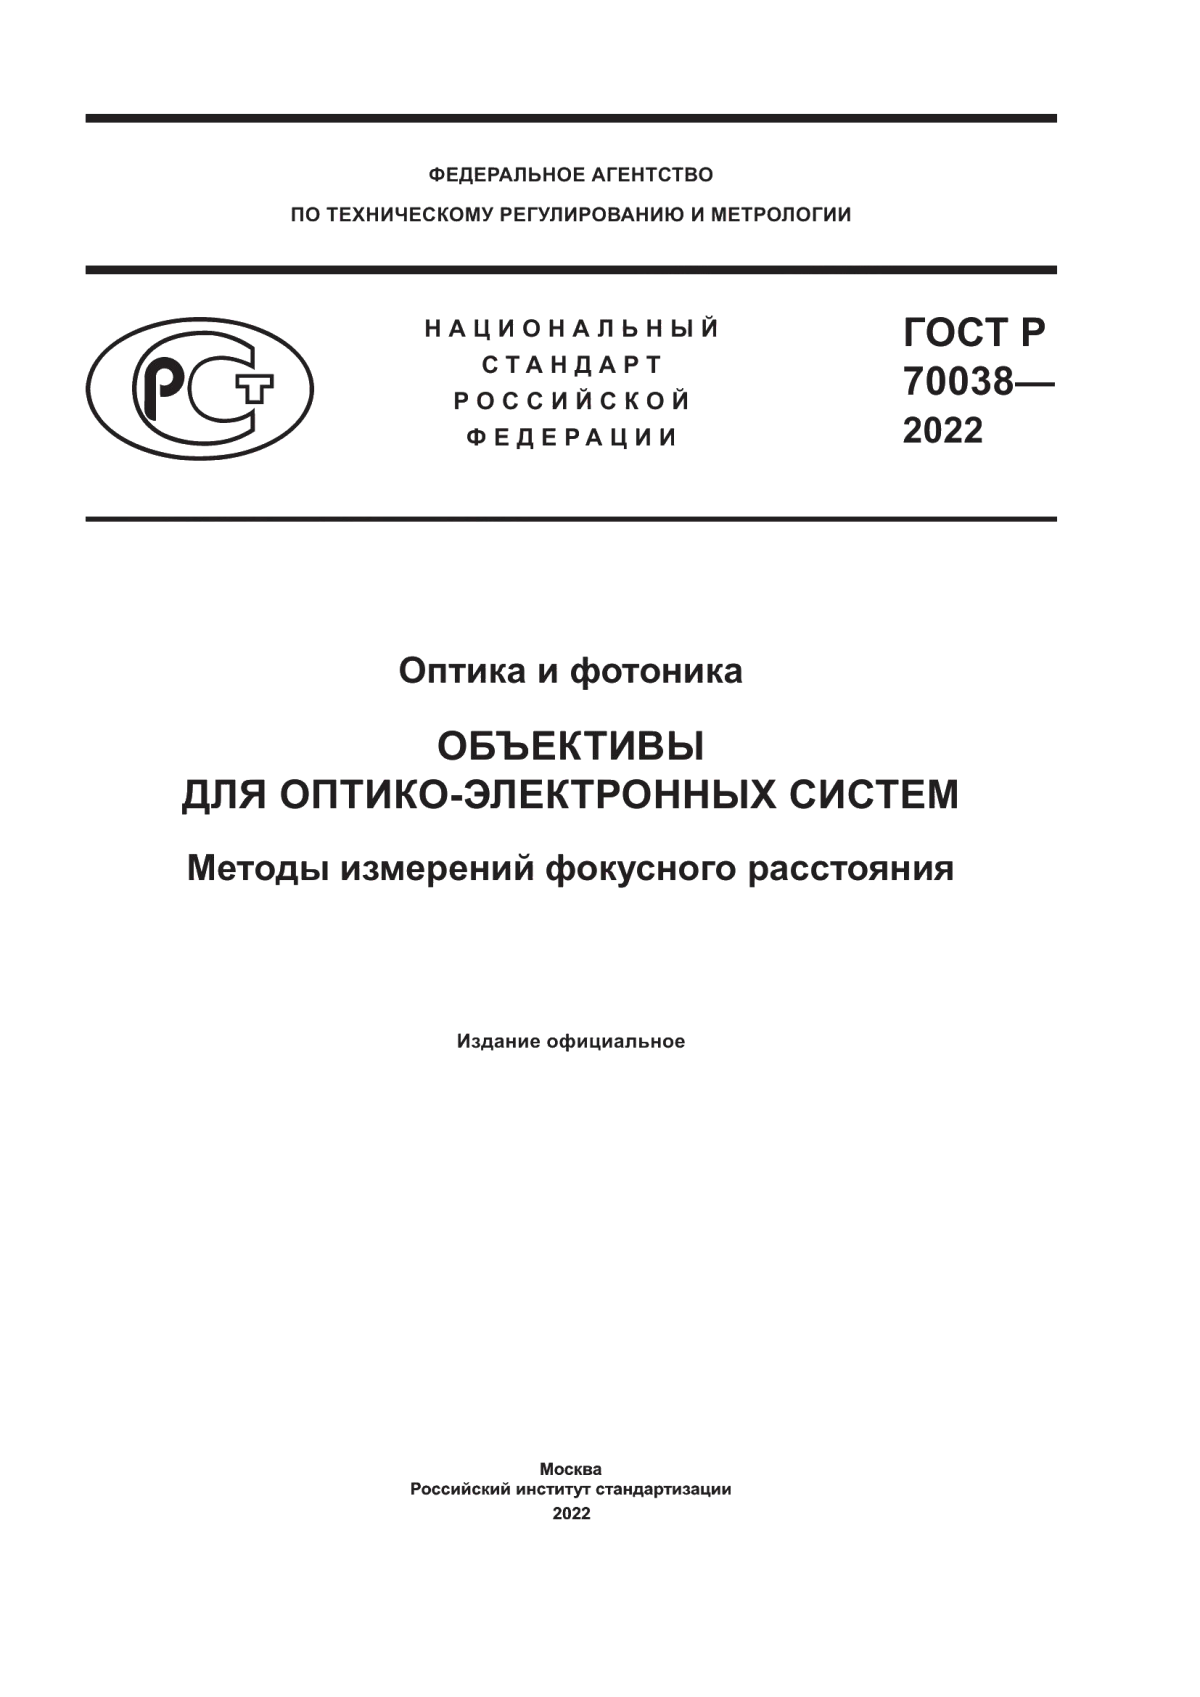 ГОСТ Р 70038-2022 Оптика и фотоника. Объективы для оптико-электронных систем. Методы измерений фокусного расстояния